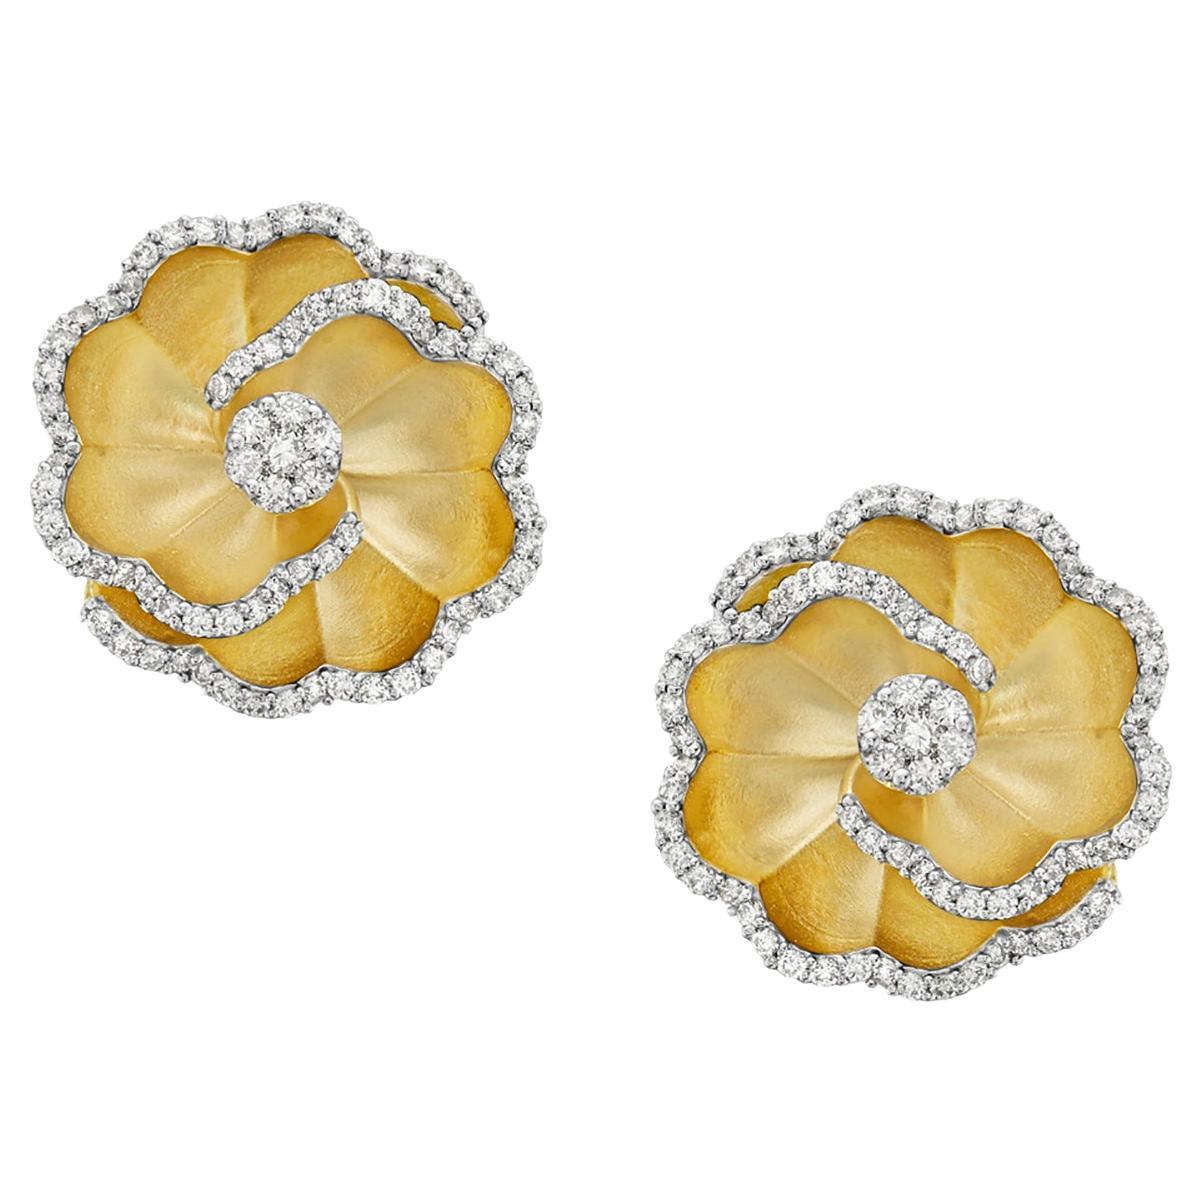 Boucles d'oreilles sculptées en forme de fleur rehaussées de diamants en or jaune 14 carats